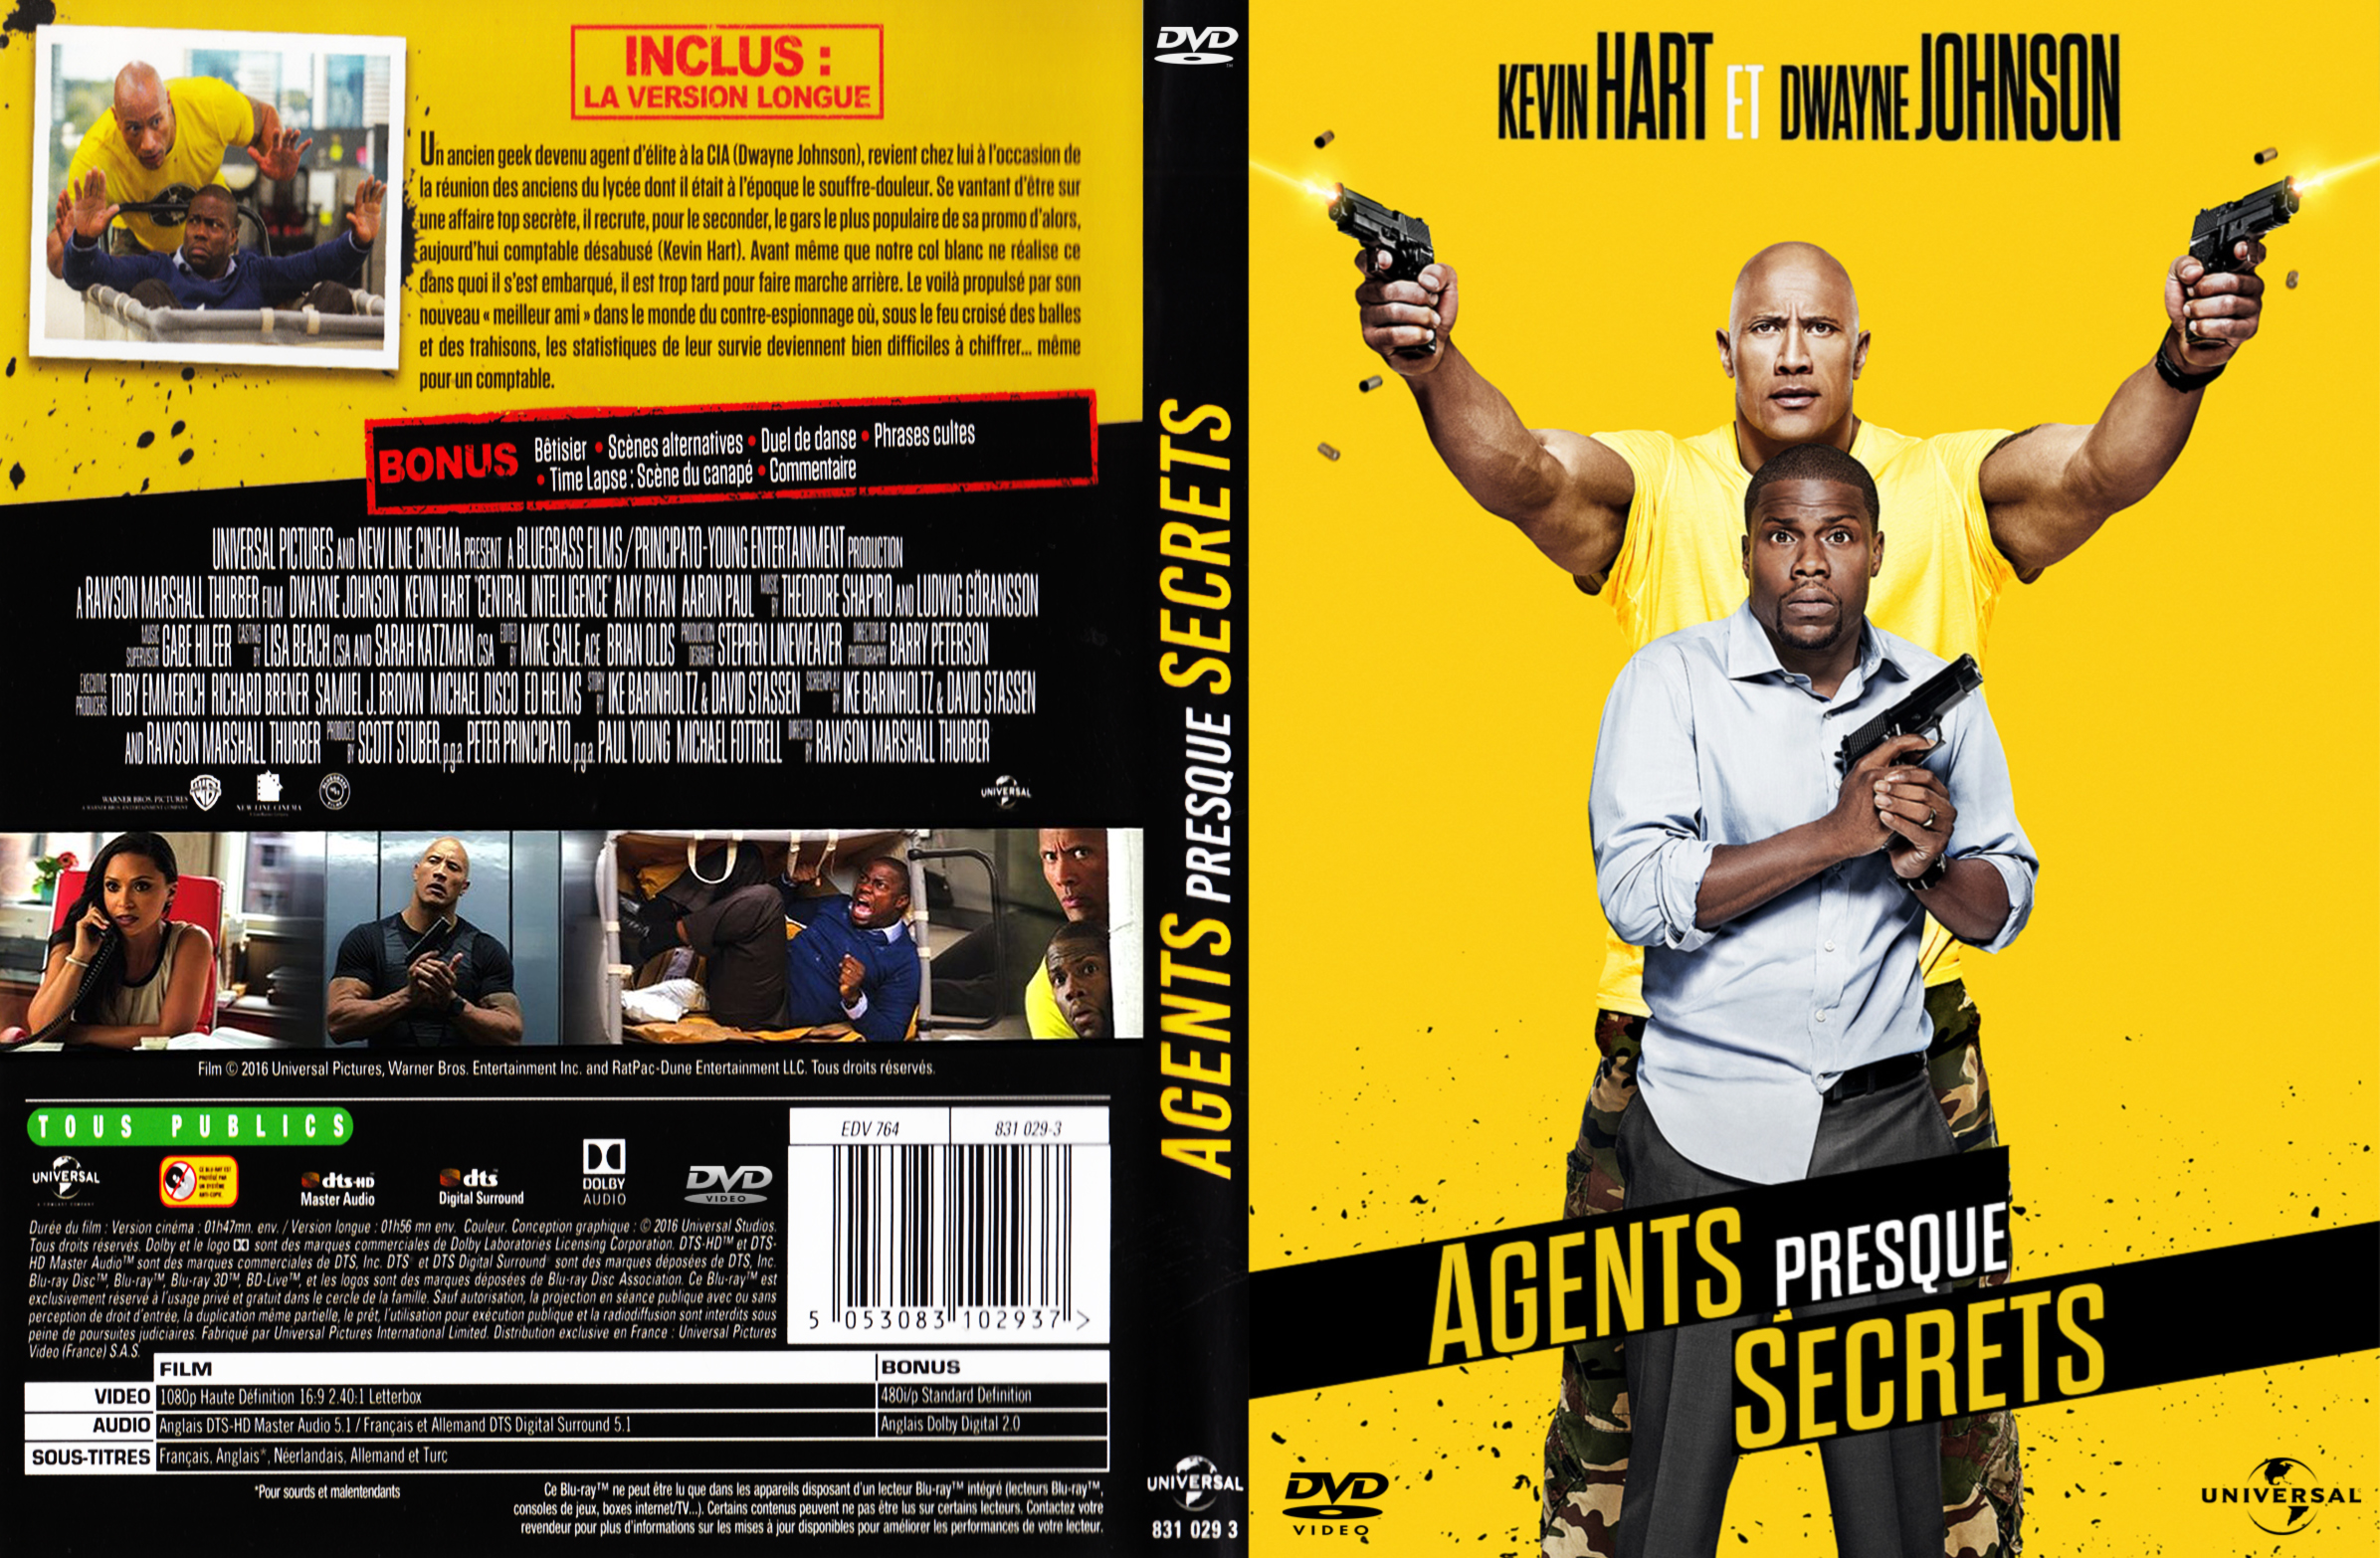 Jaquette DVD Agents Presque Secrets custom